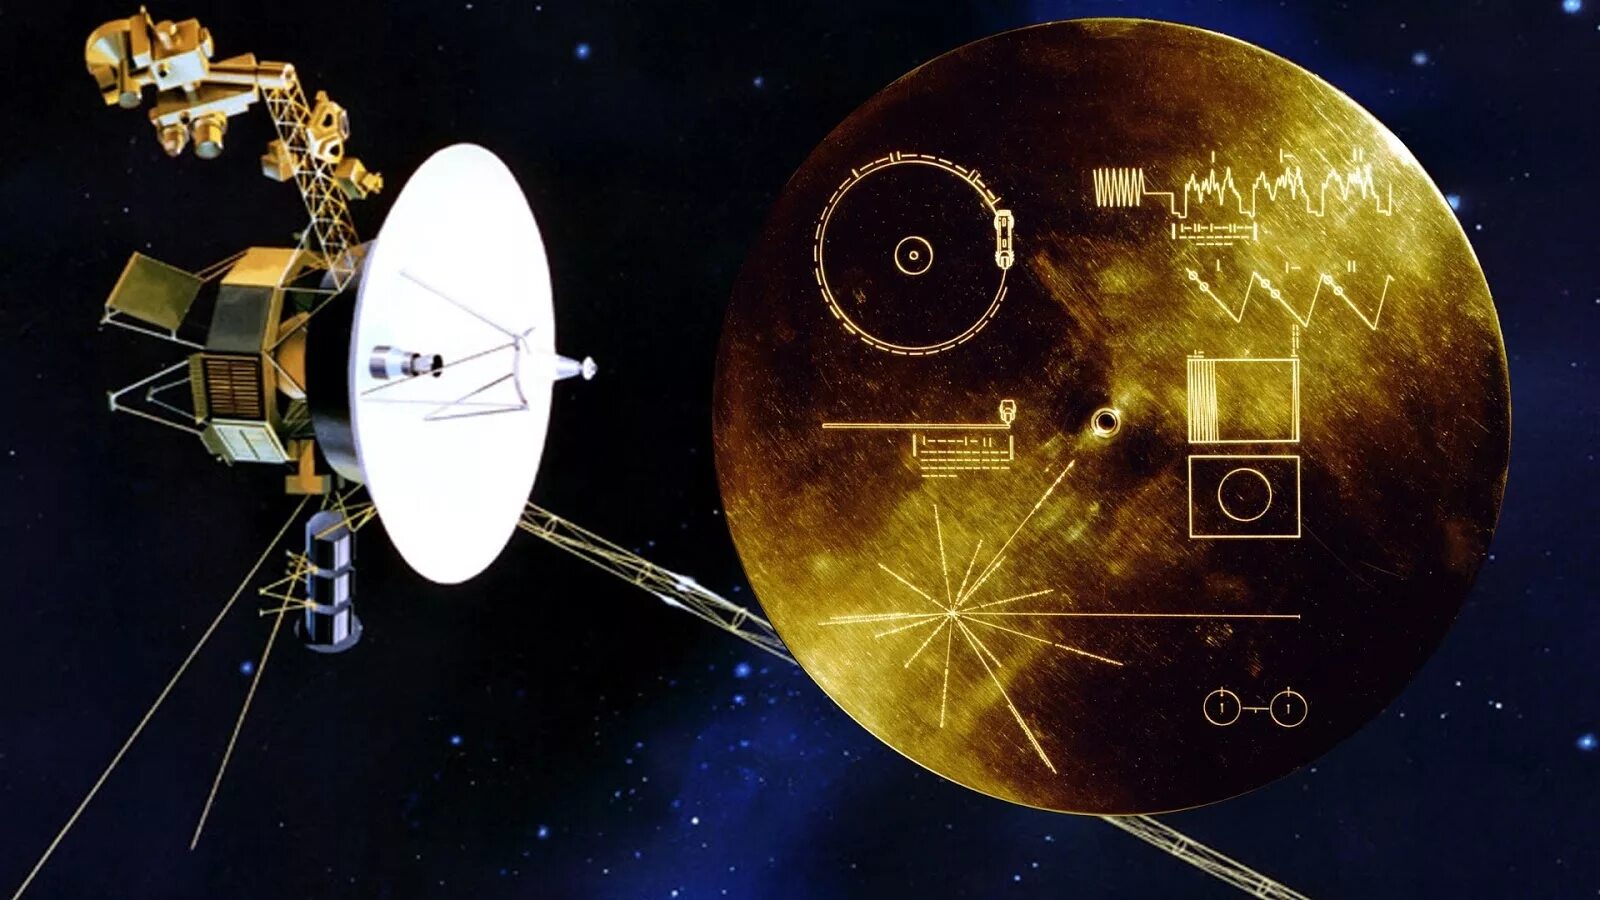 Космический аппарат ставший первым искусственным спутником солнца. Золотая пластинка «Вояджера» Вояджер 1. Космический аппарат Вояджер-1. Космический зонд Вояджер. Вояджер-1 автоматическая межпланетная станция.